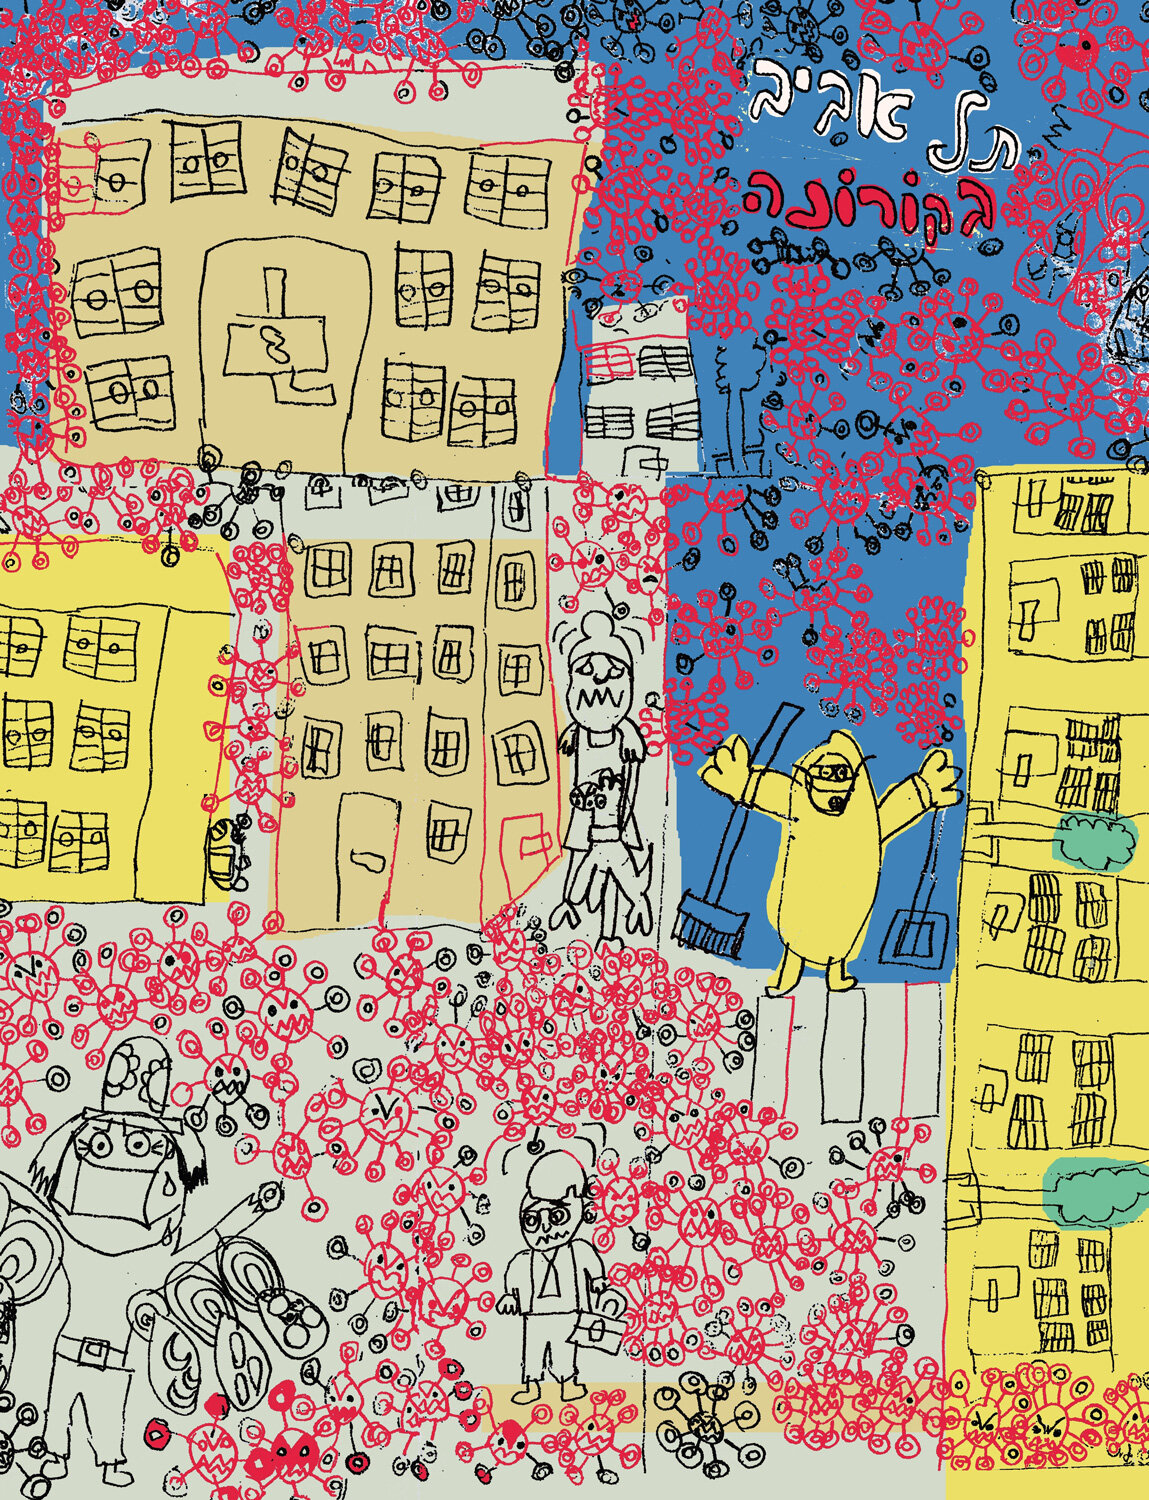 זאב ורותם אנגלמאייר, תל אביב בקורונה, הדפס, טושים וניירות צבעוניים, 2020